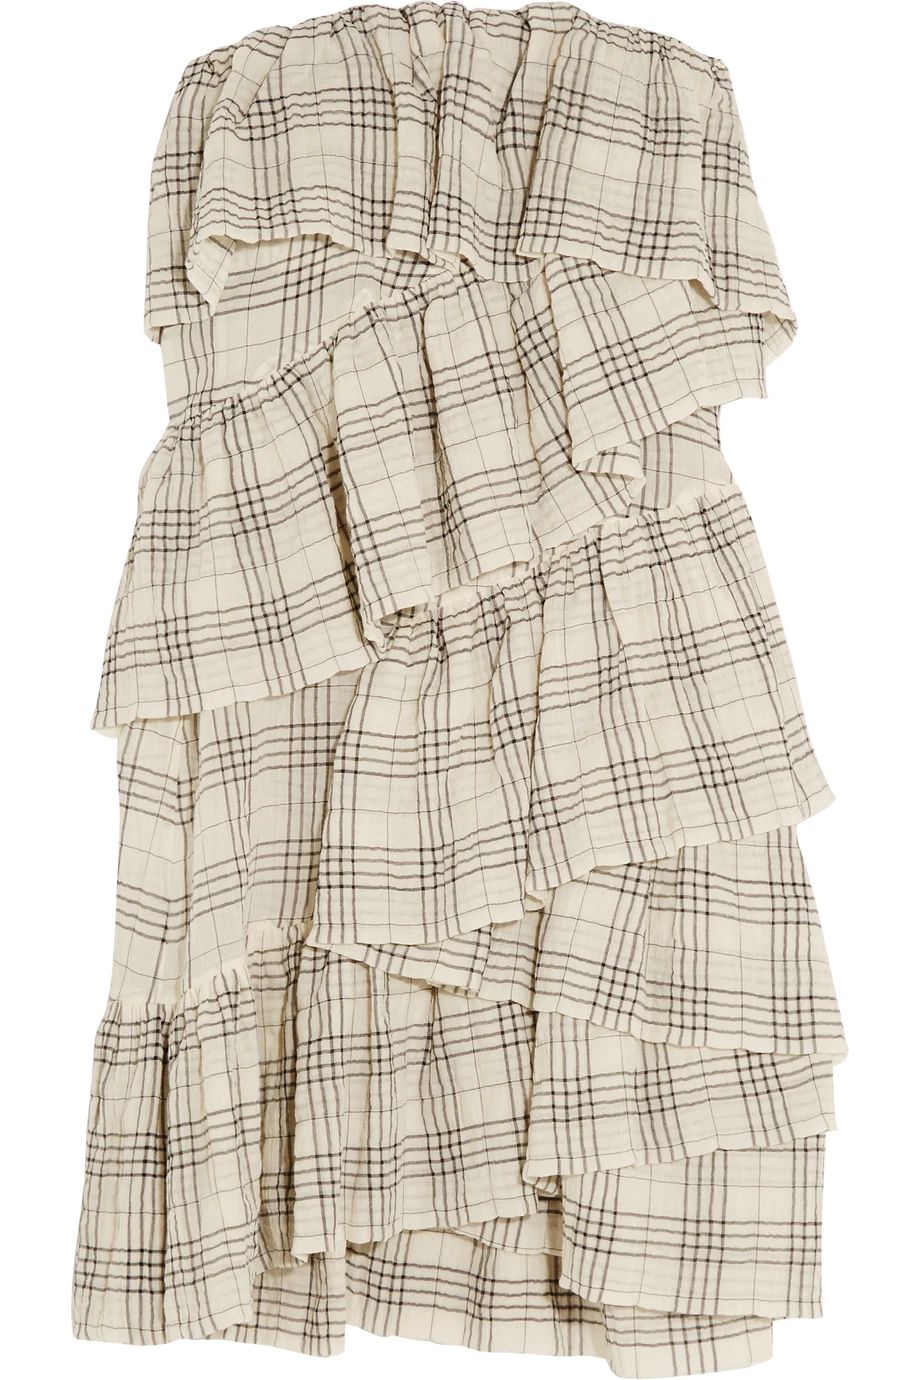 Isa Arfen Full On ruffled crinkled cotton-blend mini dress, Women's, Size: 8 | NET-A-PORTER (UK & EU)